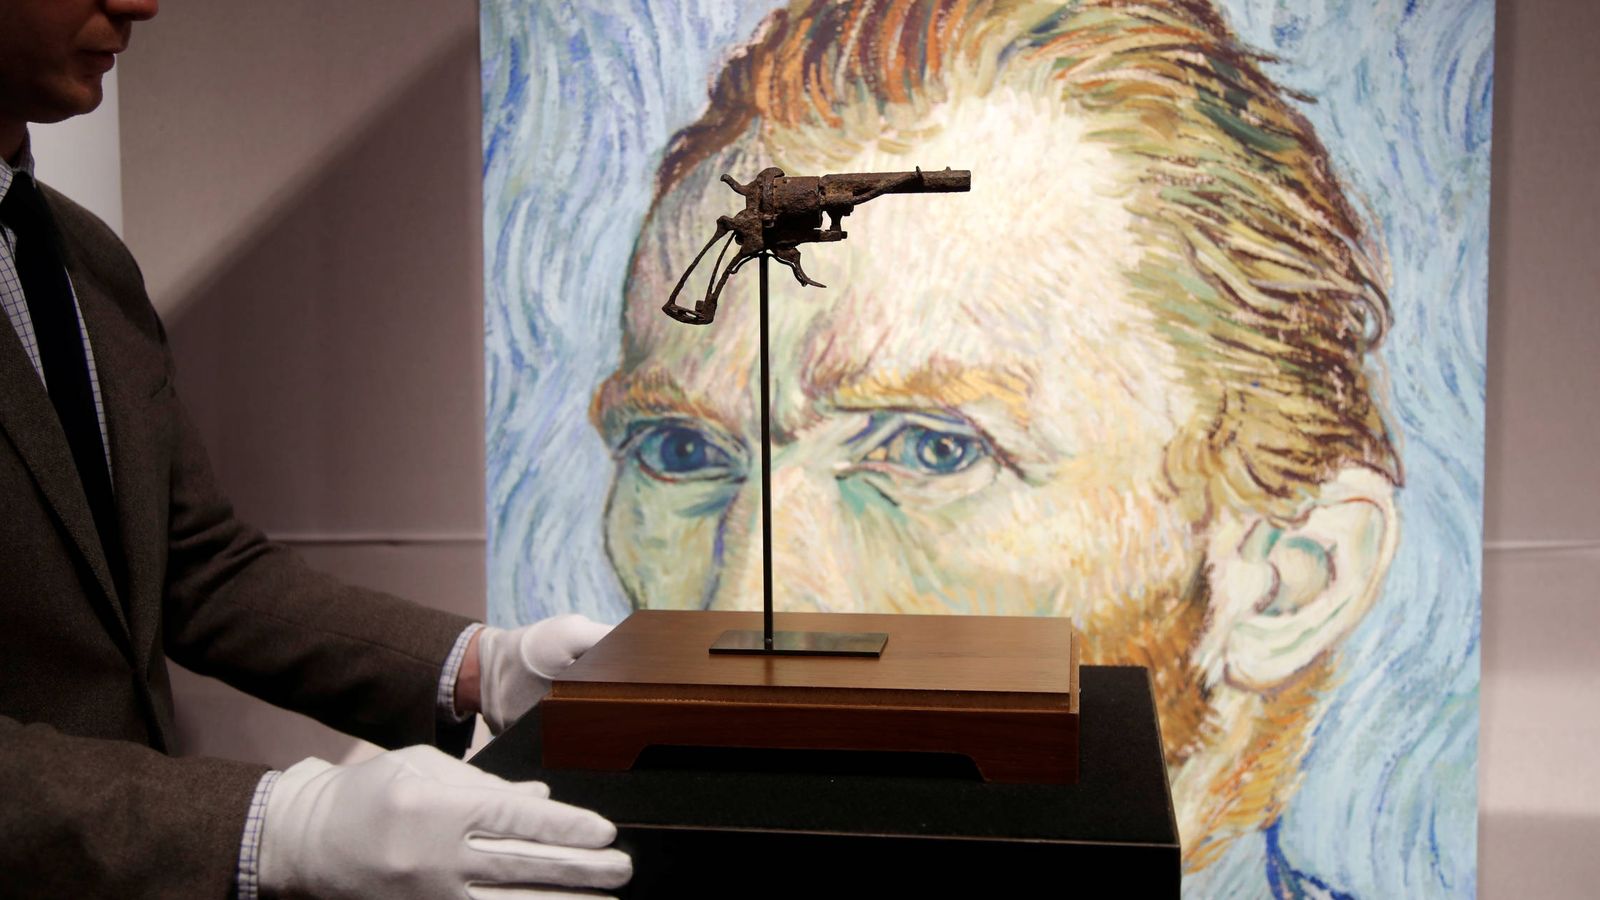 Foto: El revólver con el que se cree se disparó el artista. (REUTERS)